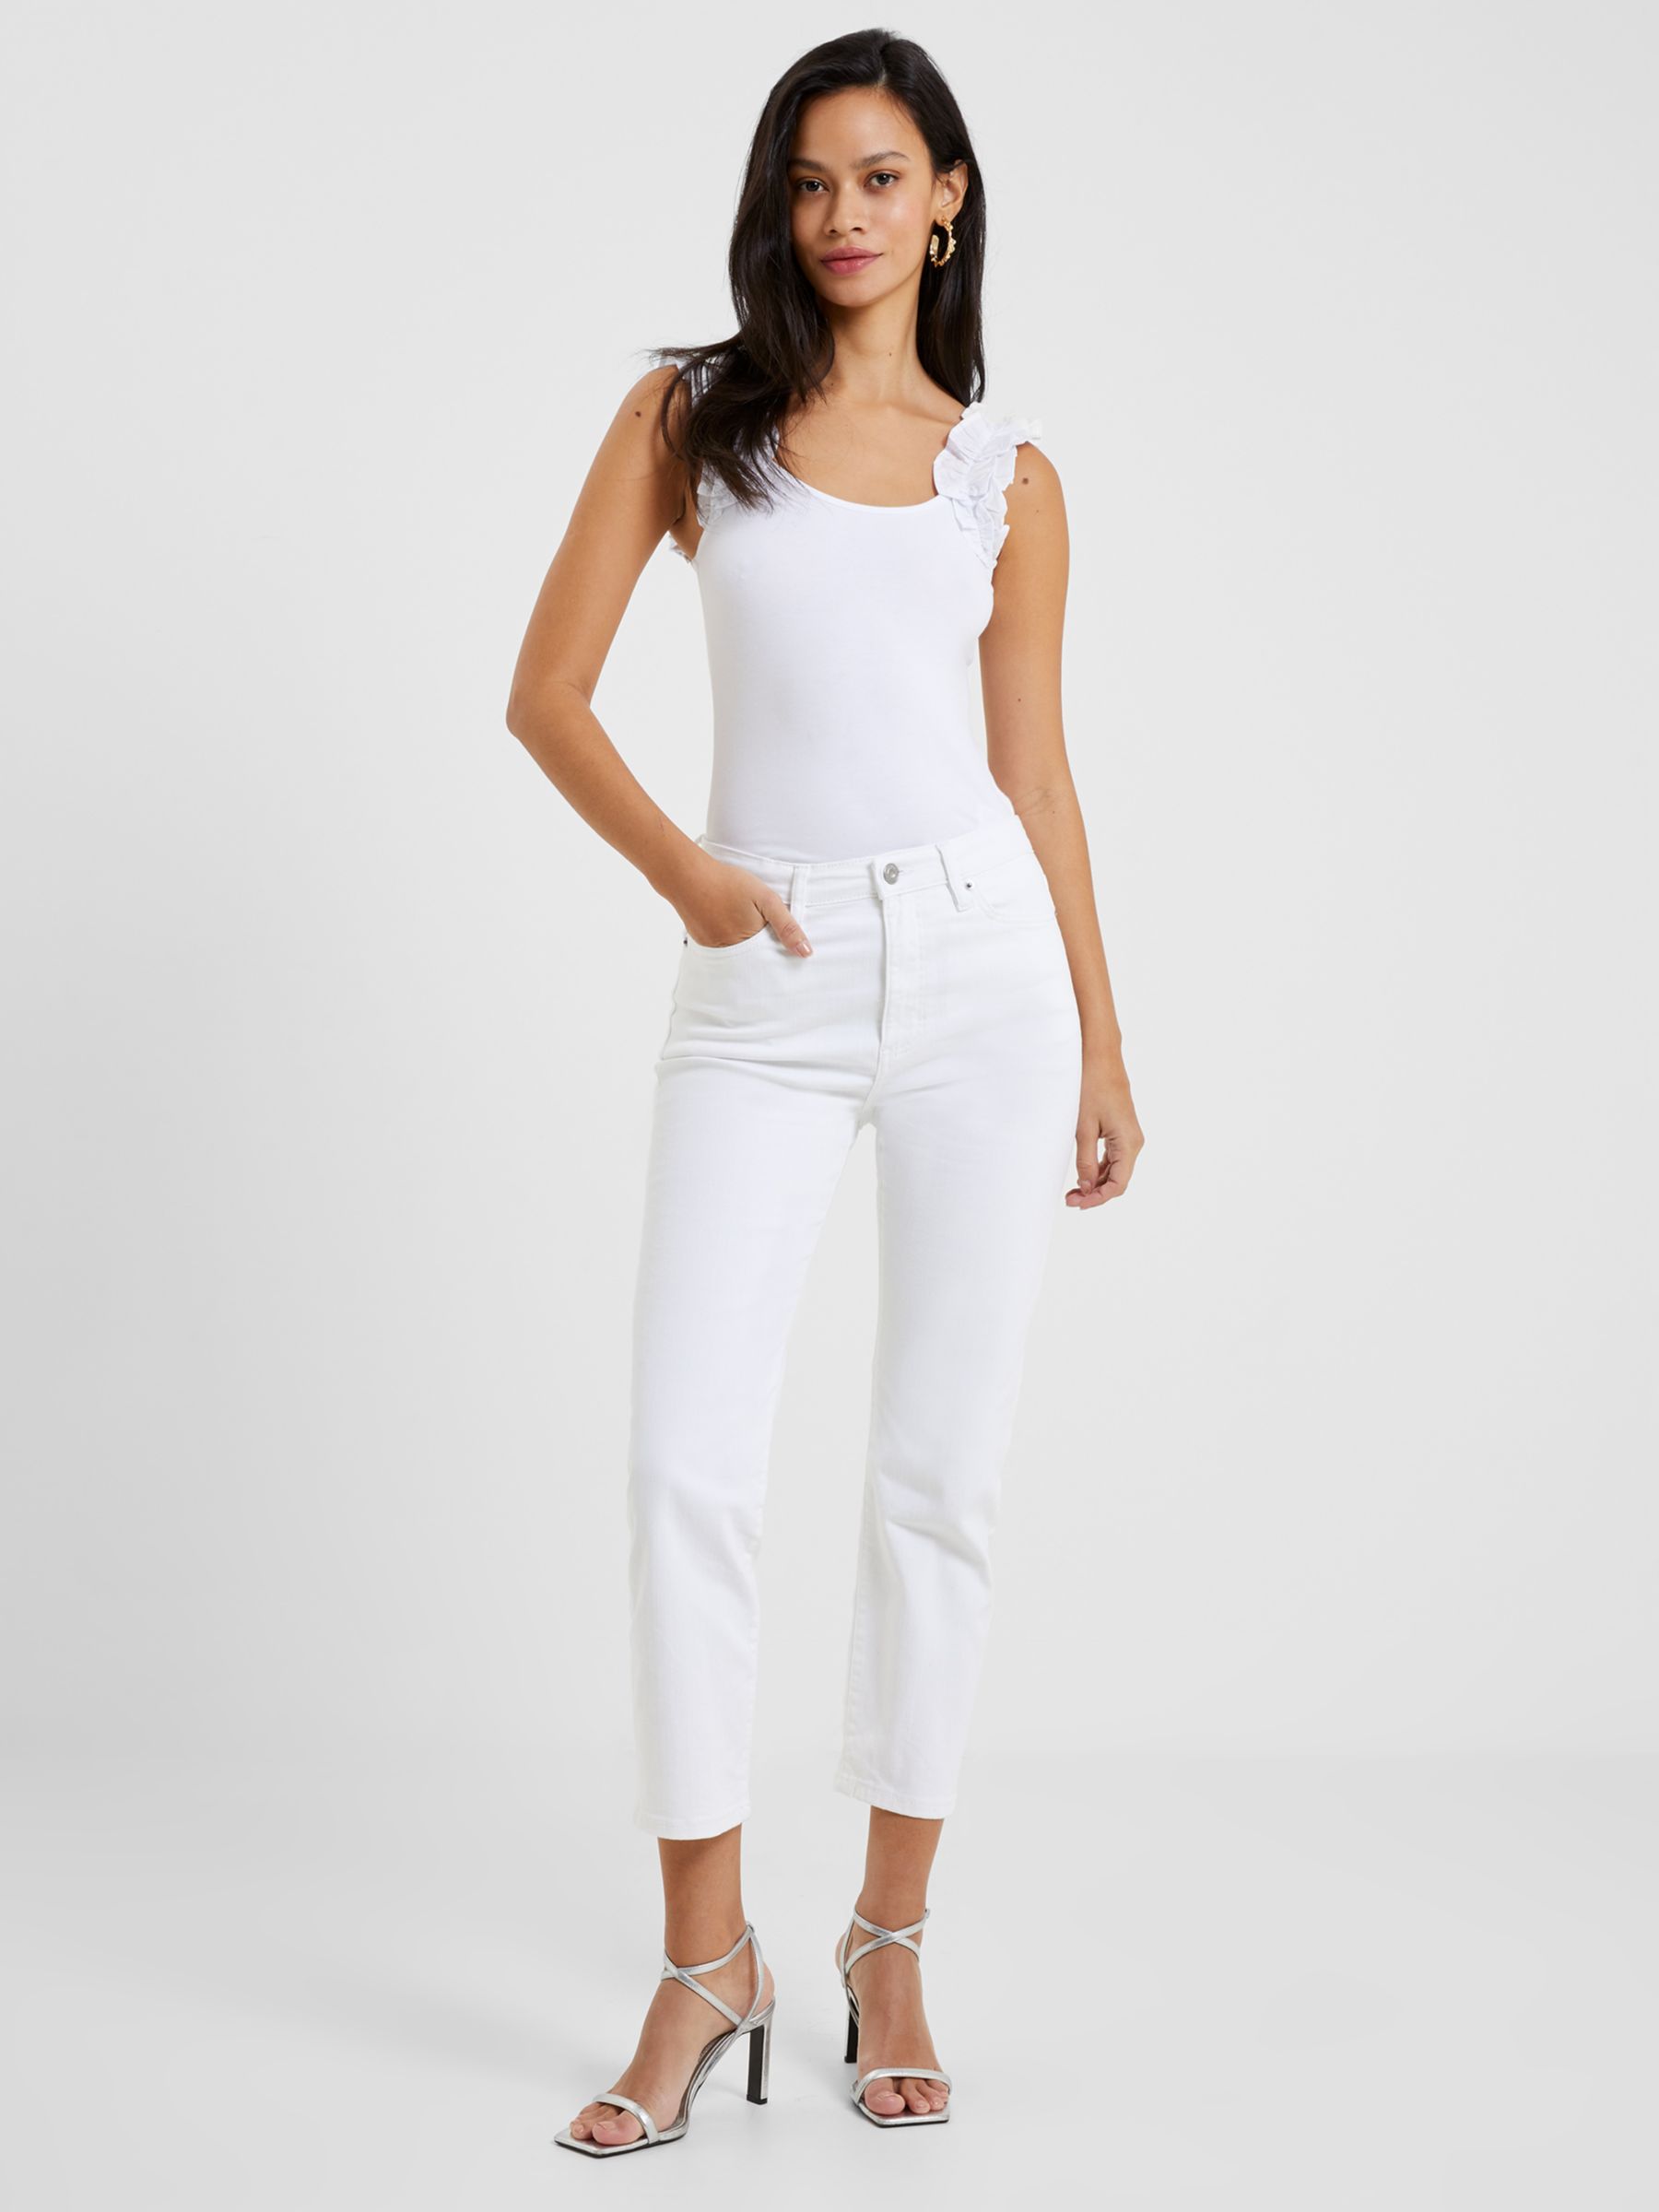 Укороченные джинсы-стрейч French Connection Conscious, белые jnby белые укороченные джинсы jnby